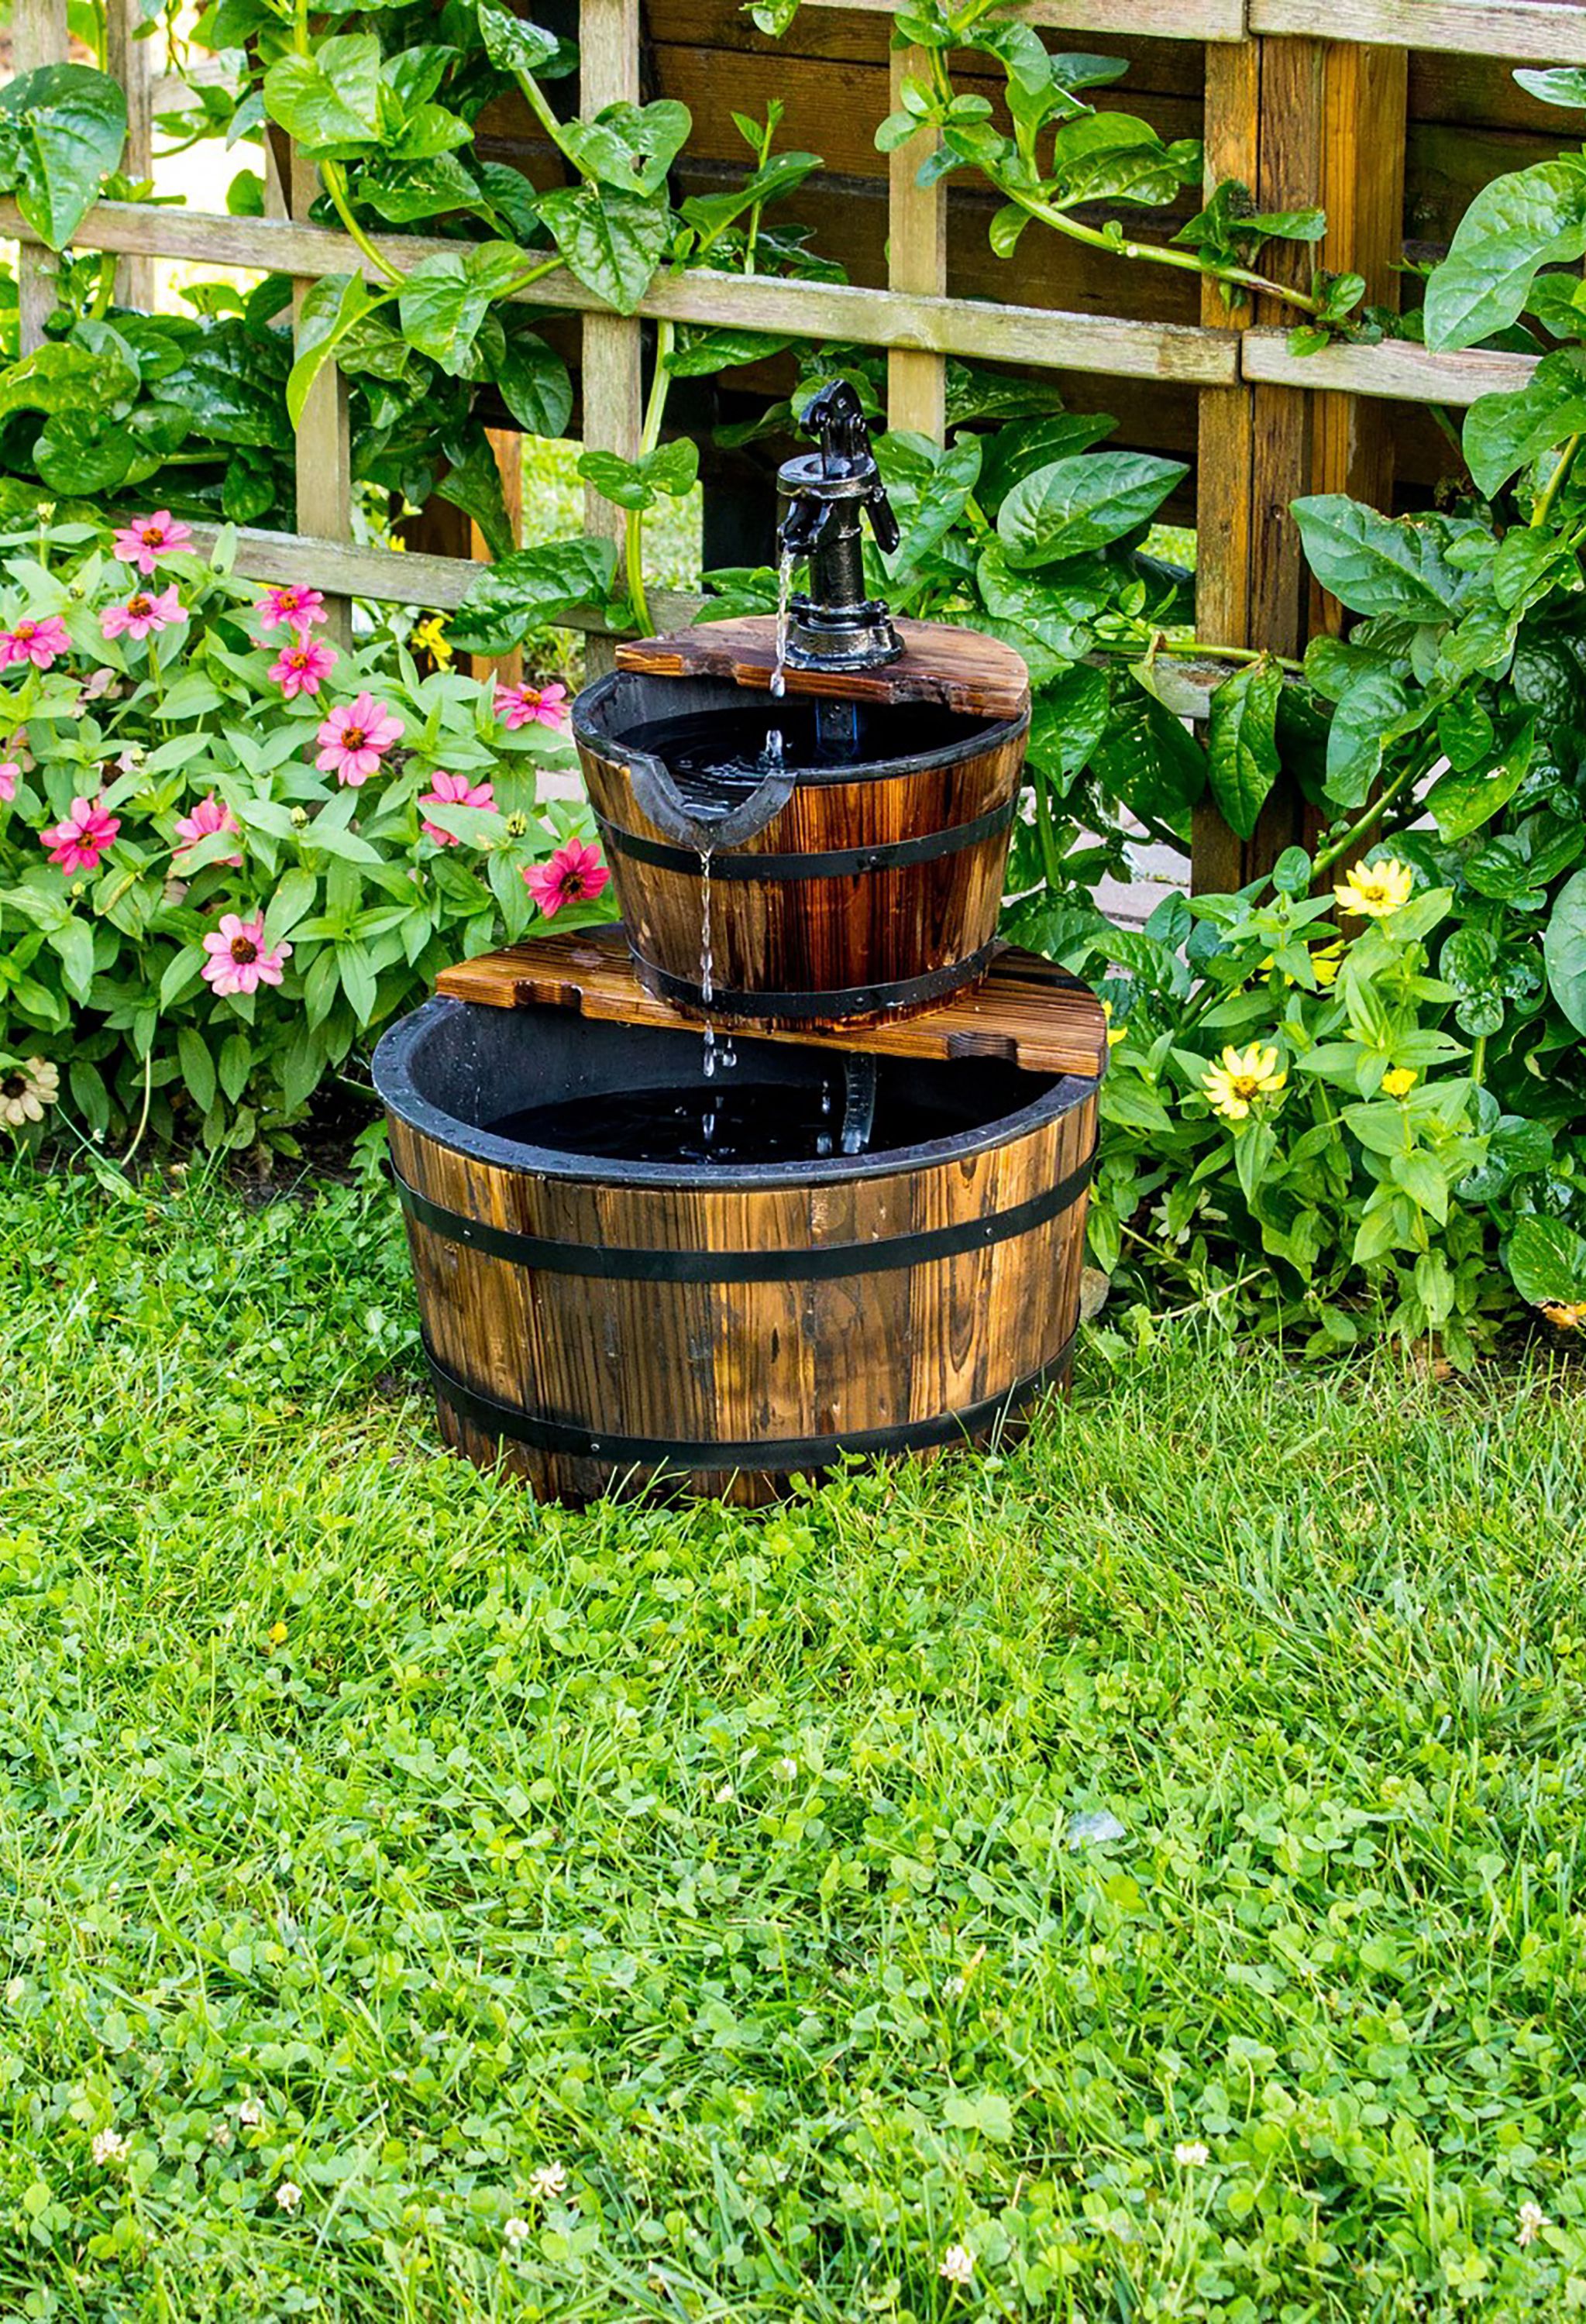 18 Outdoor Fountain Ideas - How To Make a Garden Fountain for Your ...